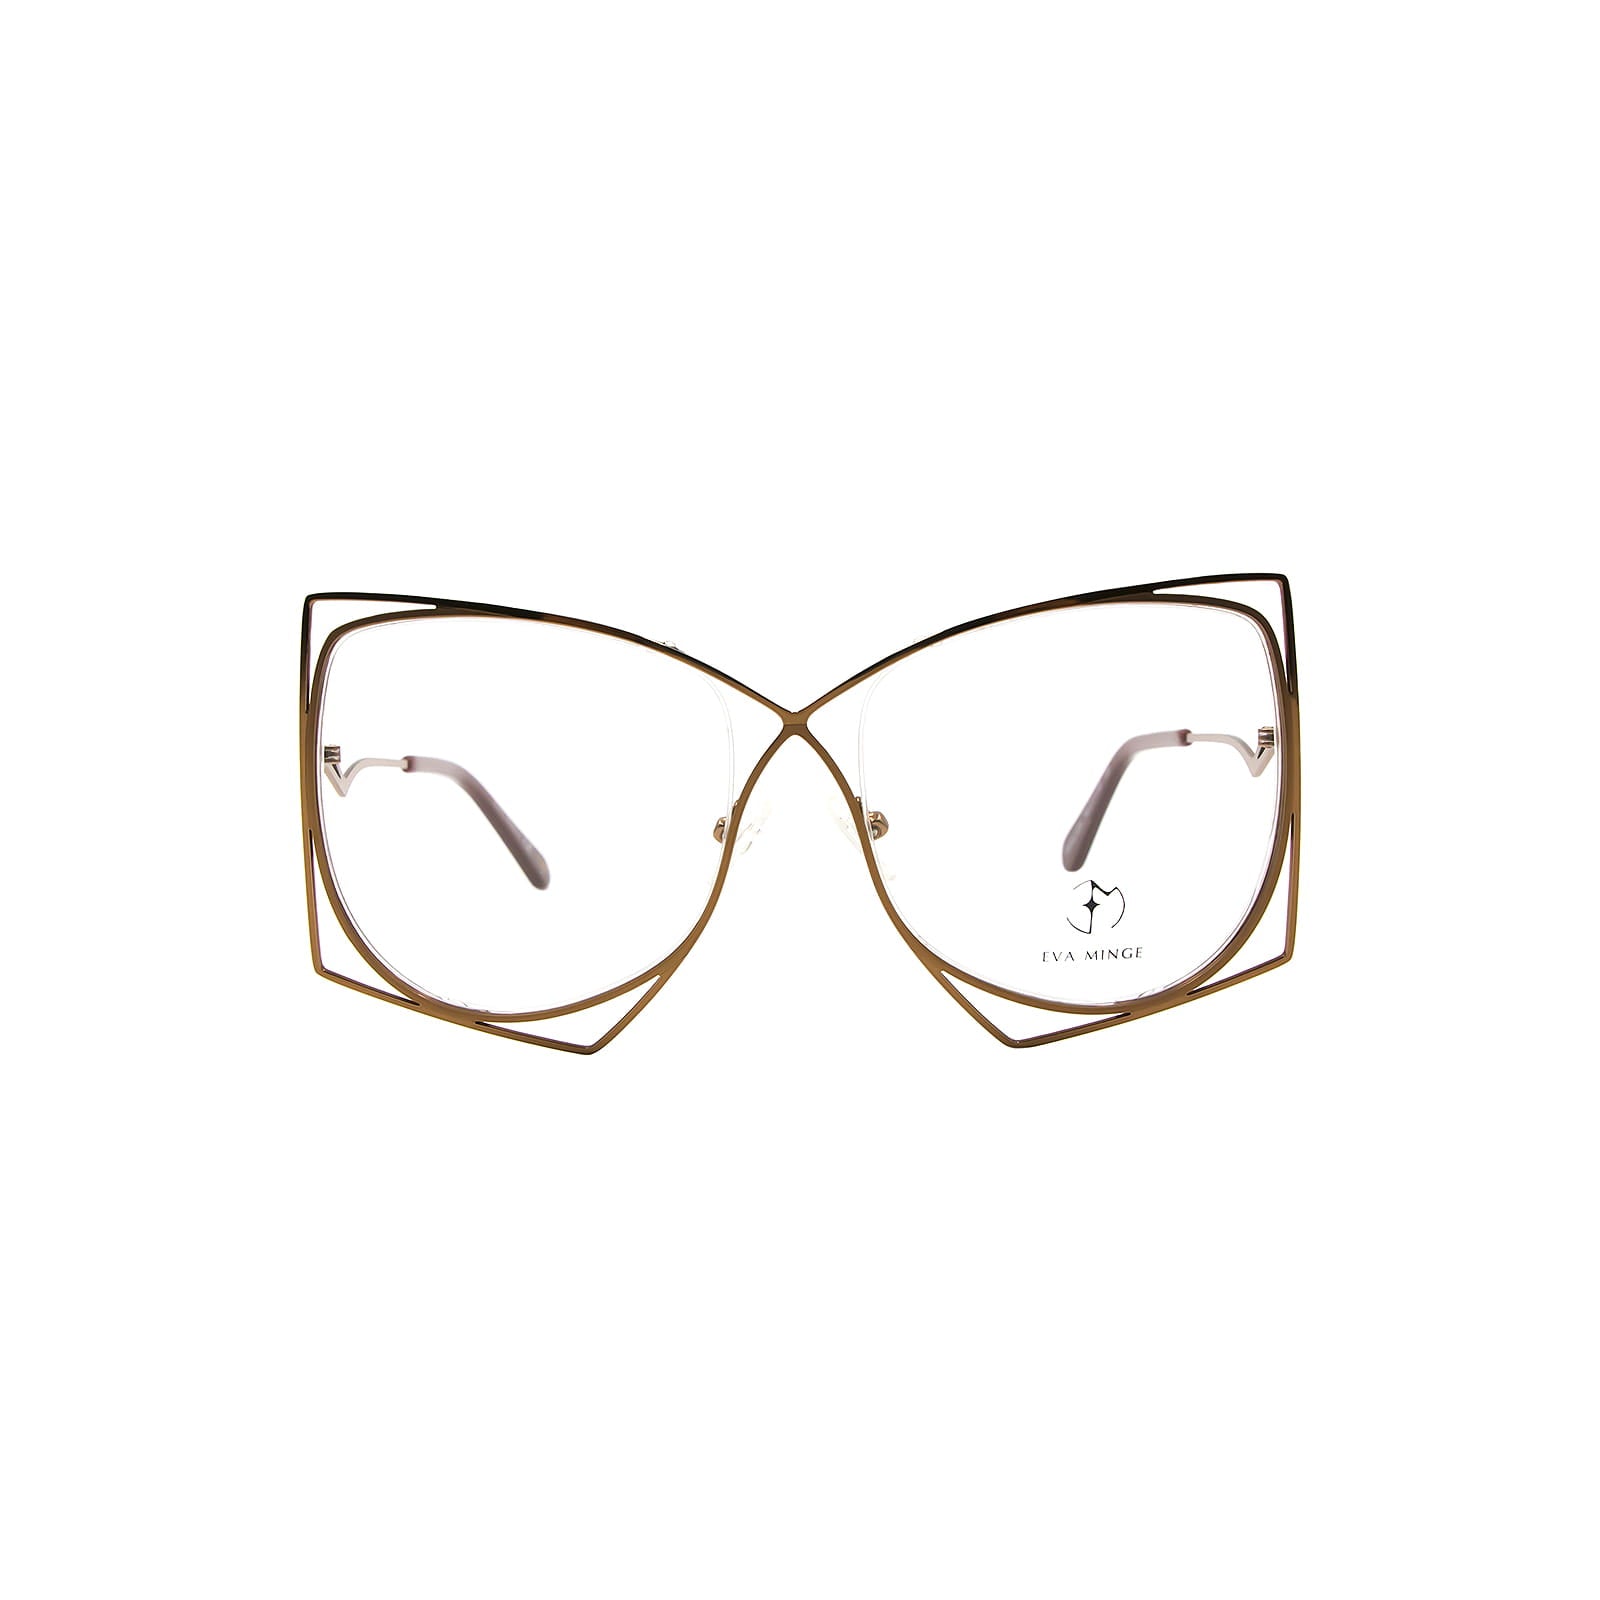 Okulary Eva Minge EMP 1025 C3 oprawki okularowe